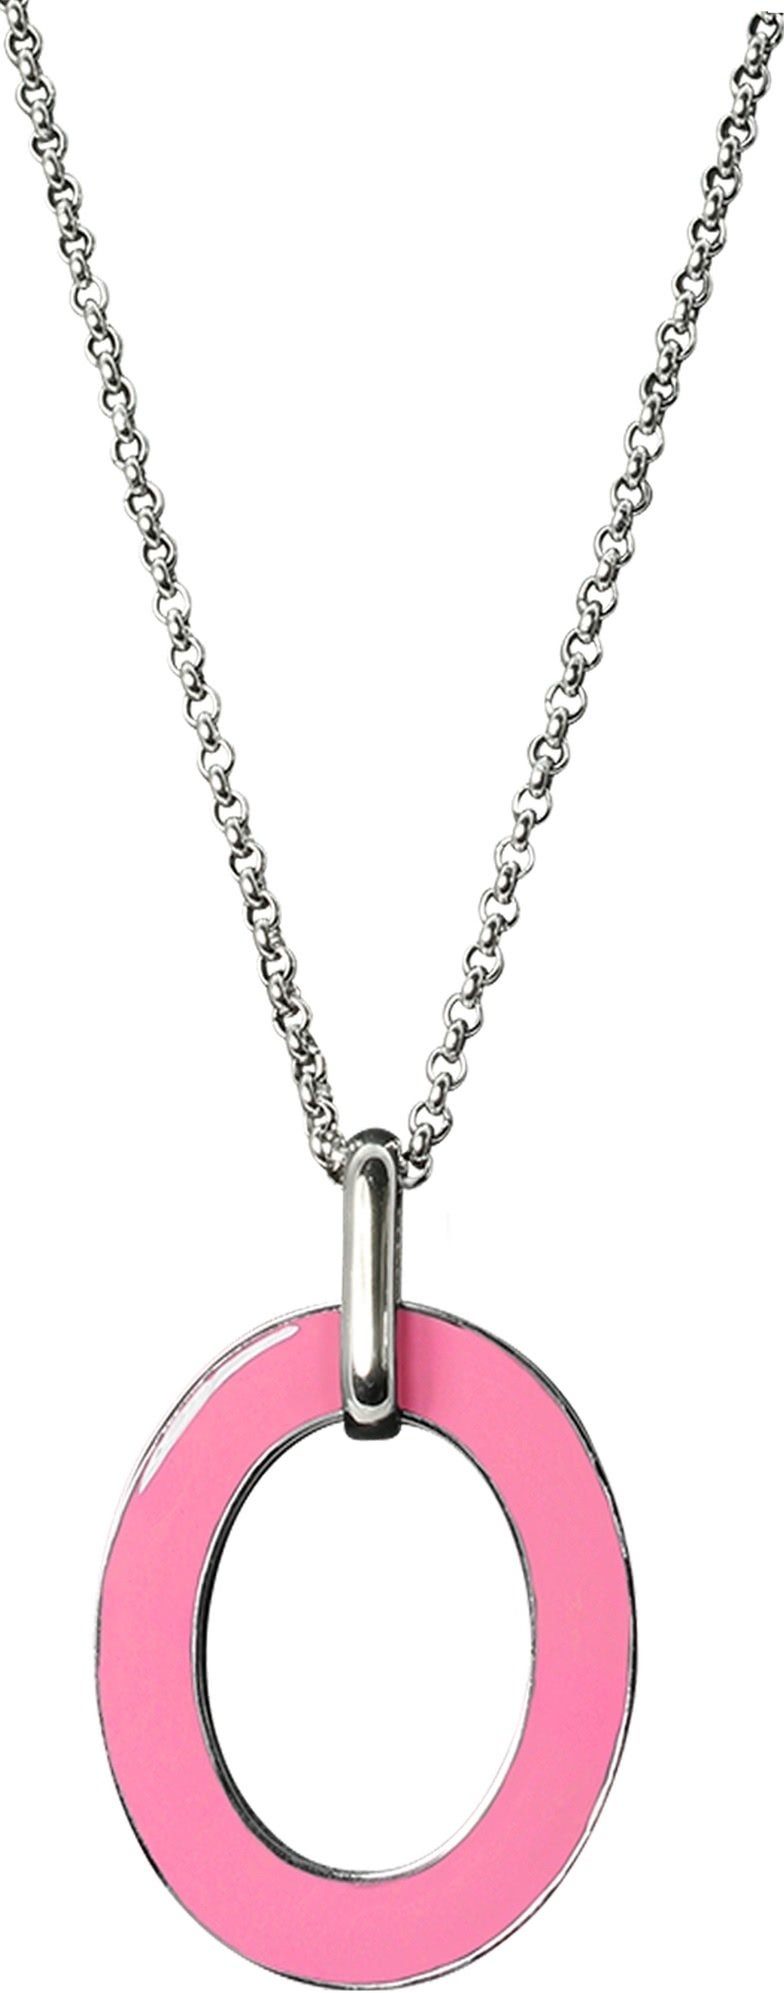 Amello Edelstahlkette Amello Oval Halskette rosa weiß (Halskette), Damen-Halskette (Oval) ca. 80cm + 4cm Verlängerung, Edelstahl (Stainle